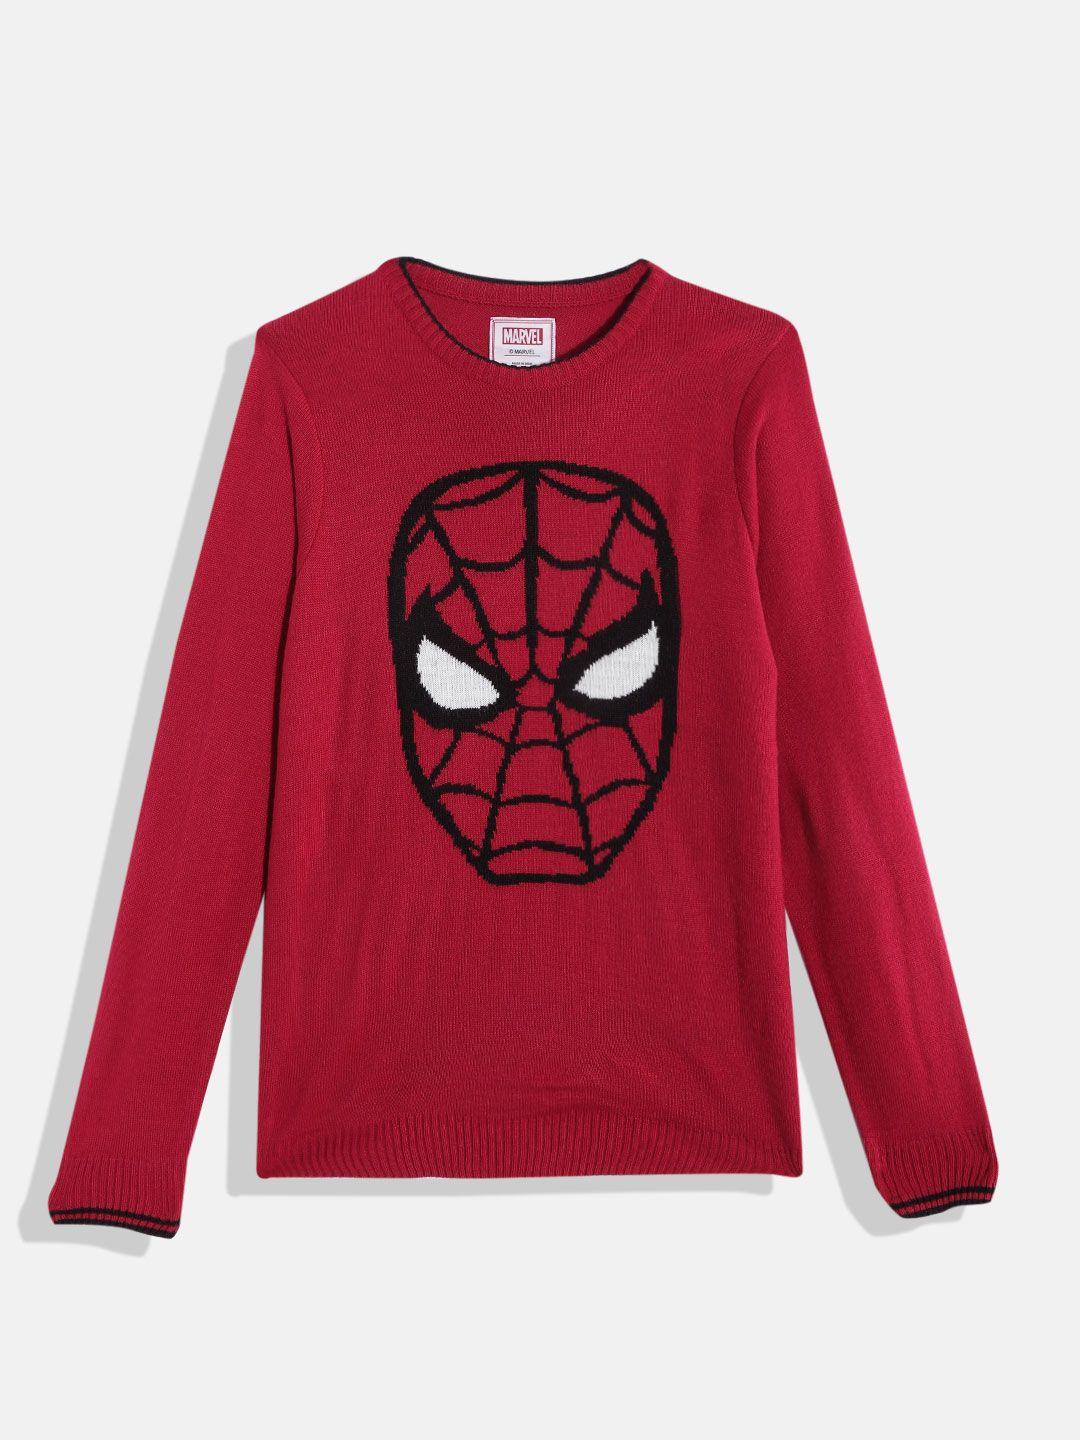 kook-n-keech-marvel-teens-boys-red-&-black-spider-man-printed-pullover